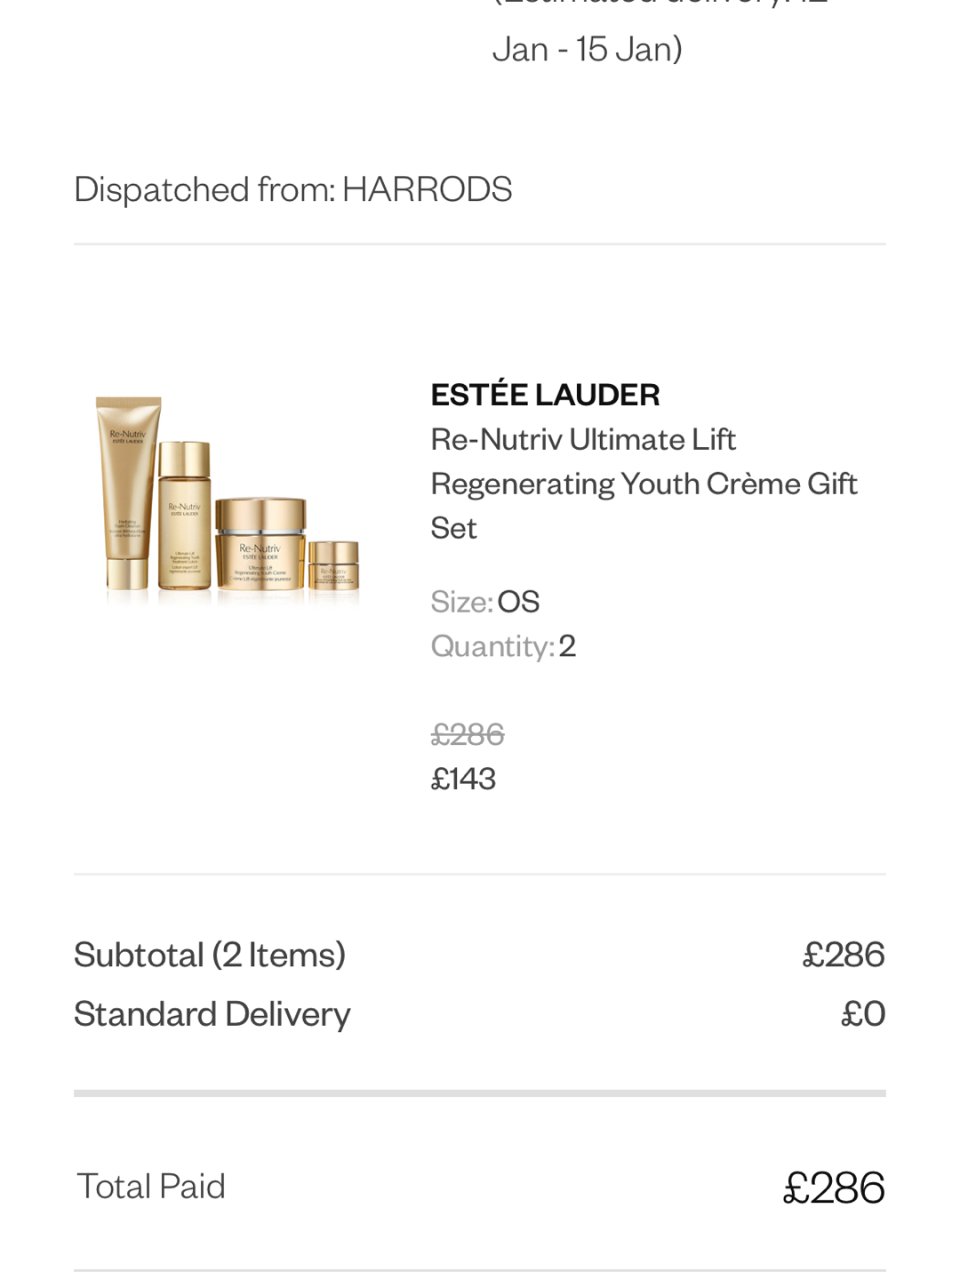 Sale | Estée Lauder Re-Nutriv Ultimate Lift Regenerating Youth Crème Gift Set | Harrods UK